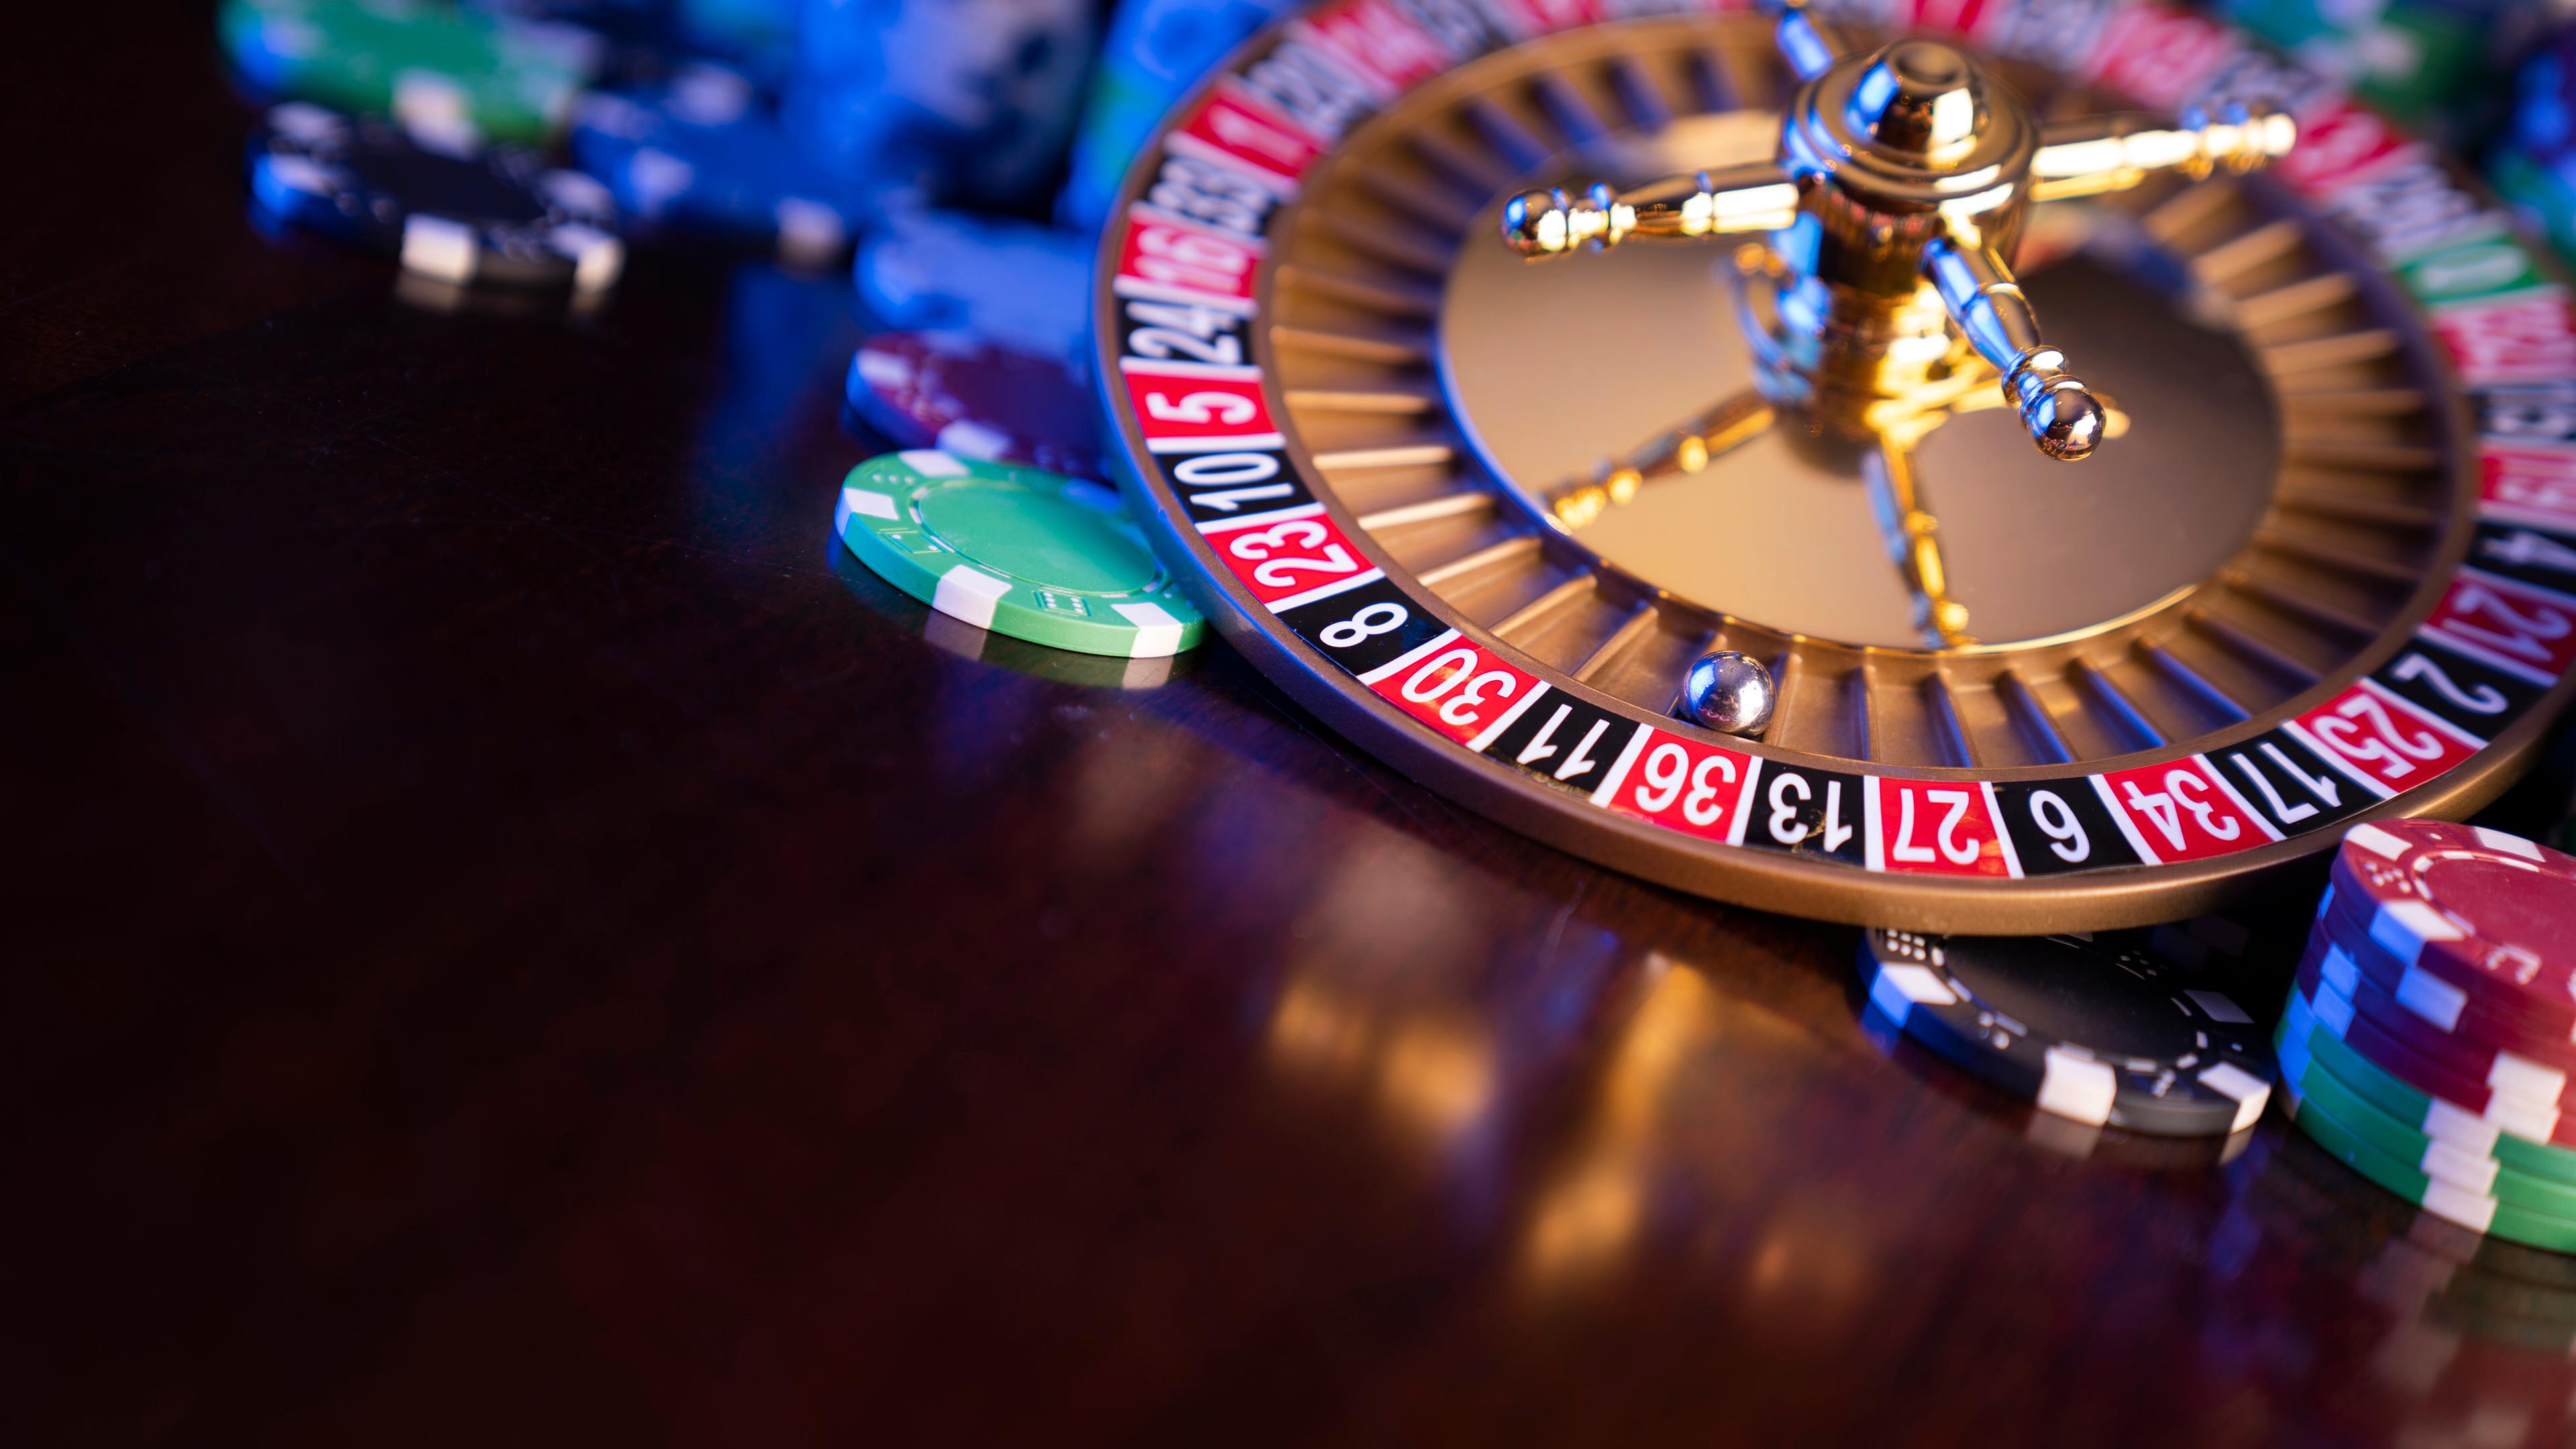 På billedet ses en roulette liggende på et brunt bord. Rundt om rouletten er der en masse forskellige jetoner. Roulettekuglen ligger på rødt tal nummer 36, men er ellers ikke i gang med et spil.